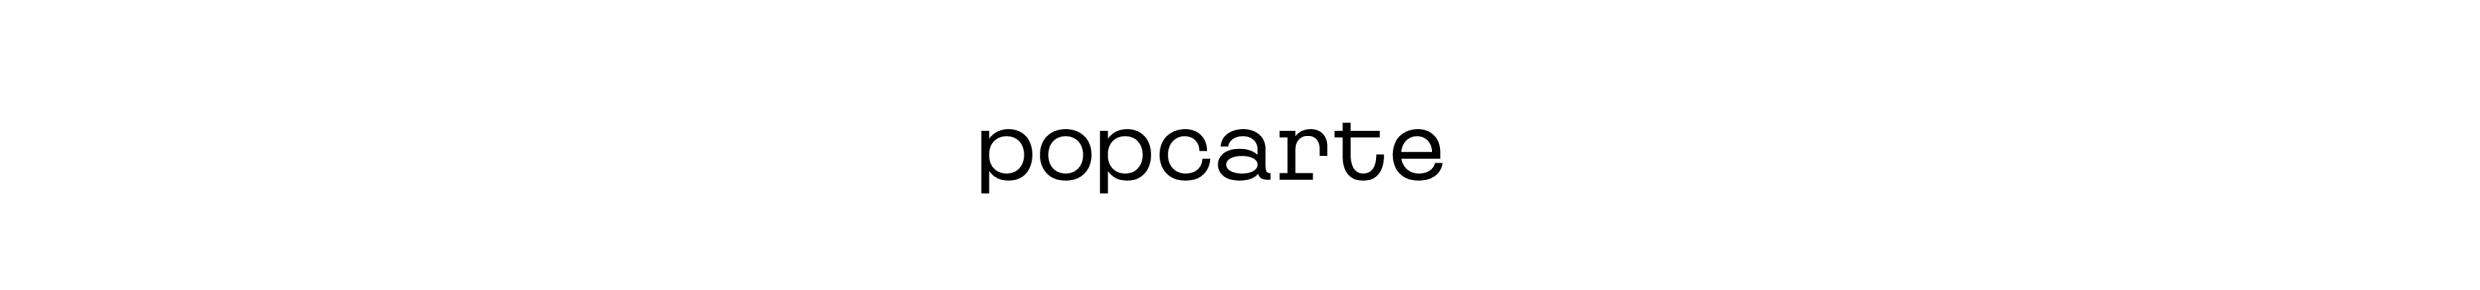 POPCARTE logo